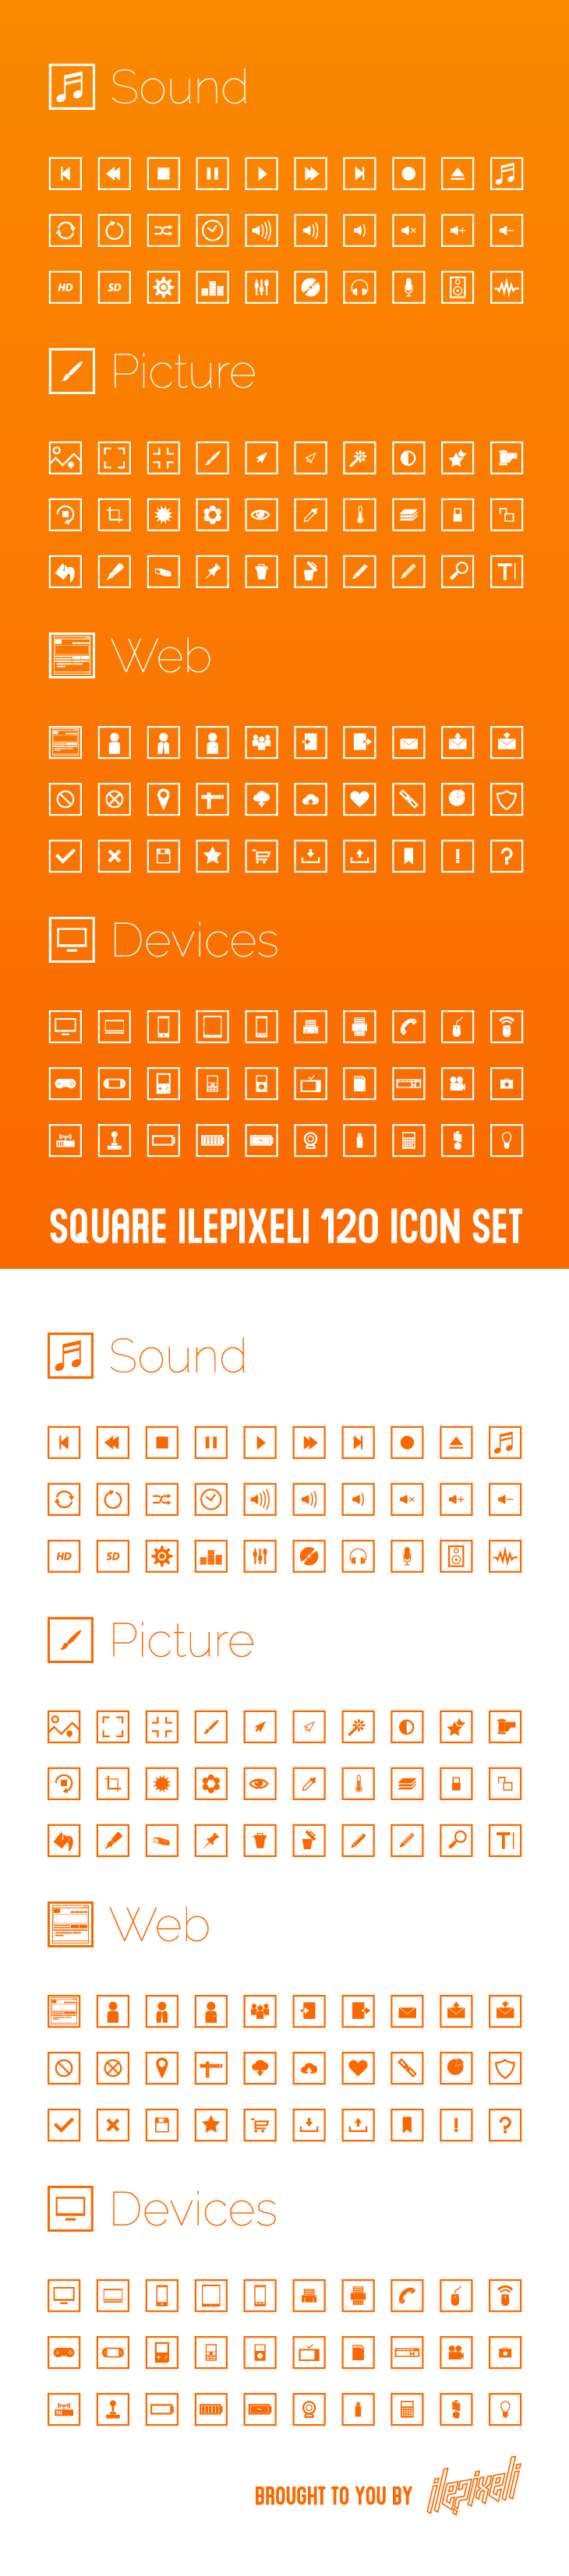 120个方块形状的矢量图标套装下载